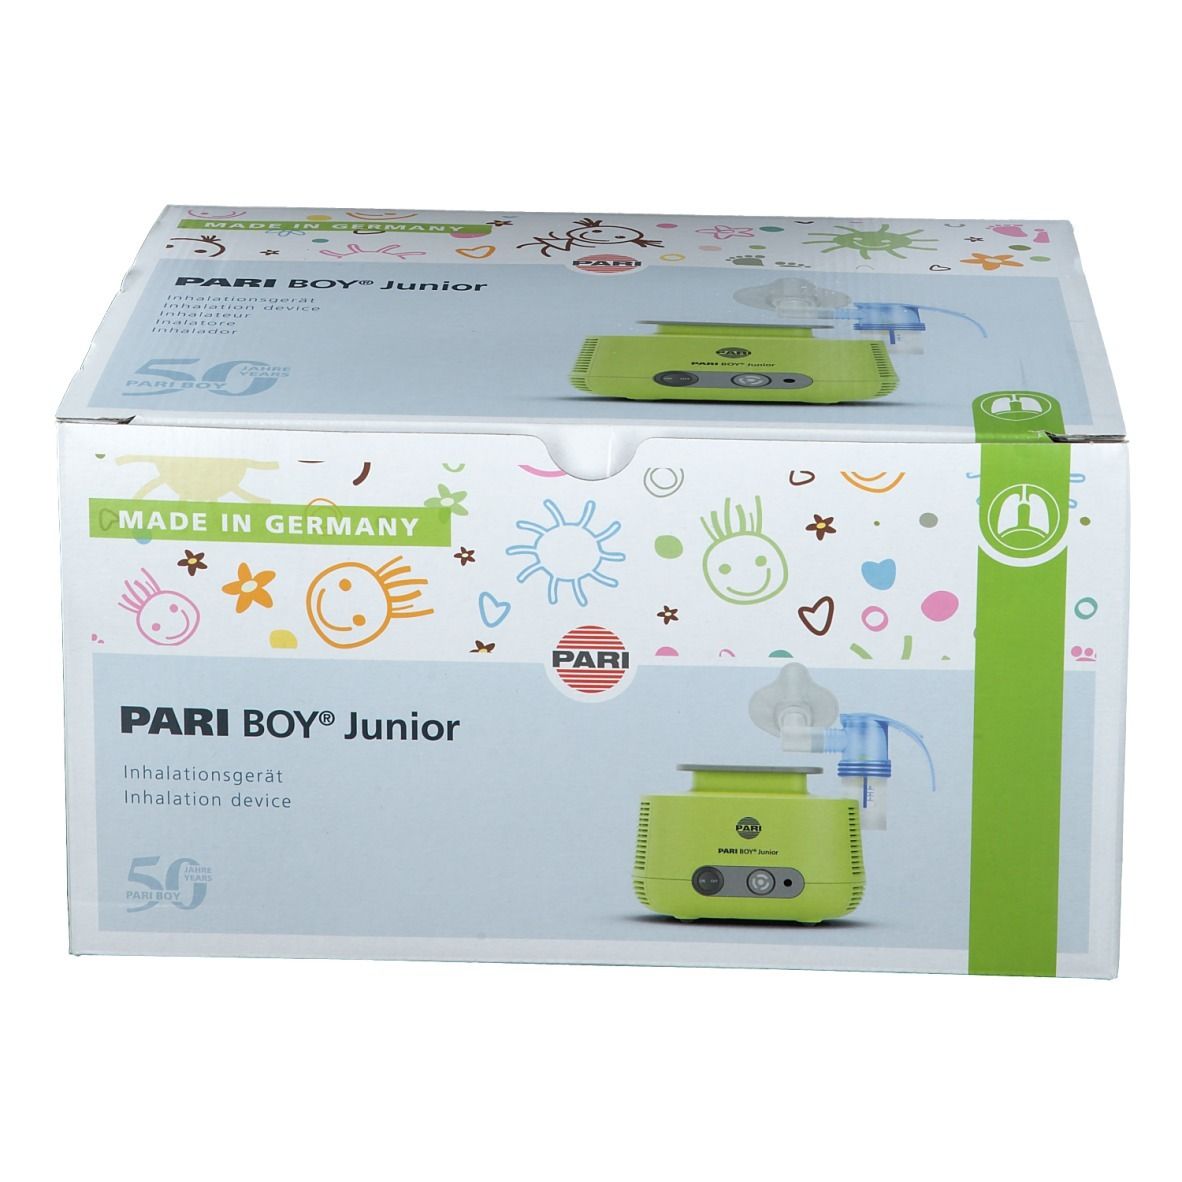 PARI BOY® Junior